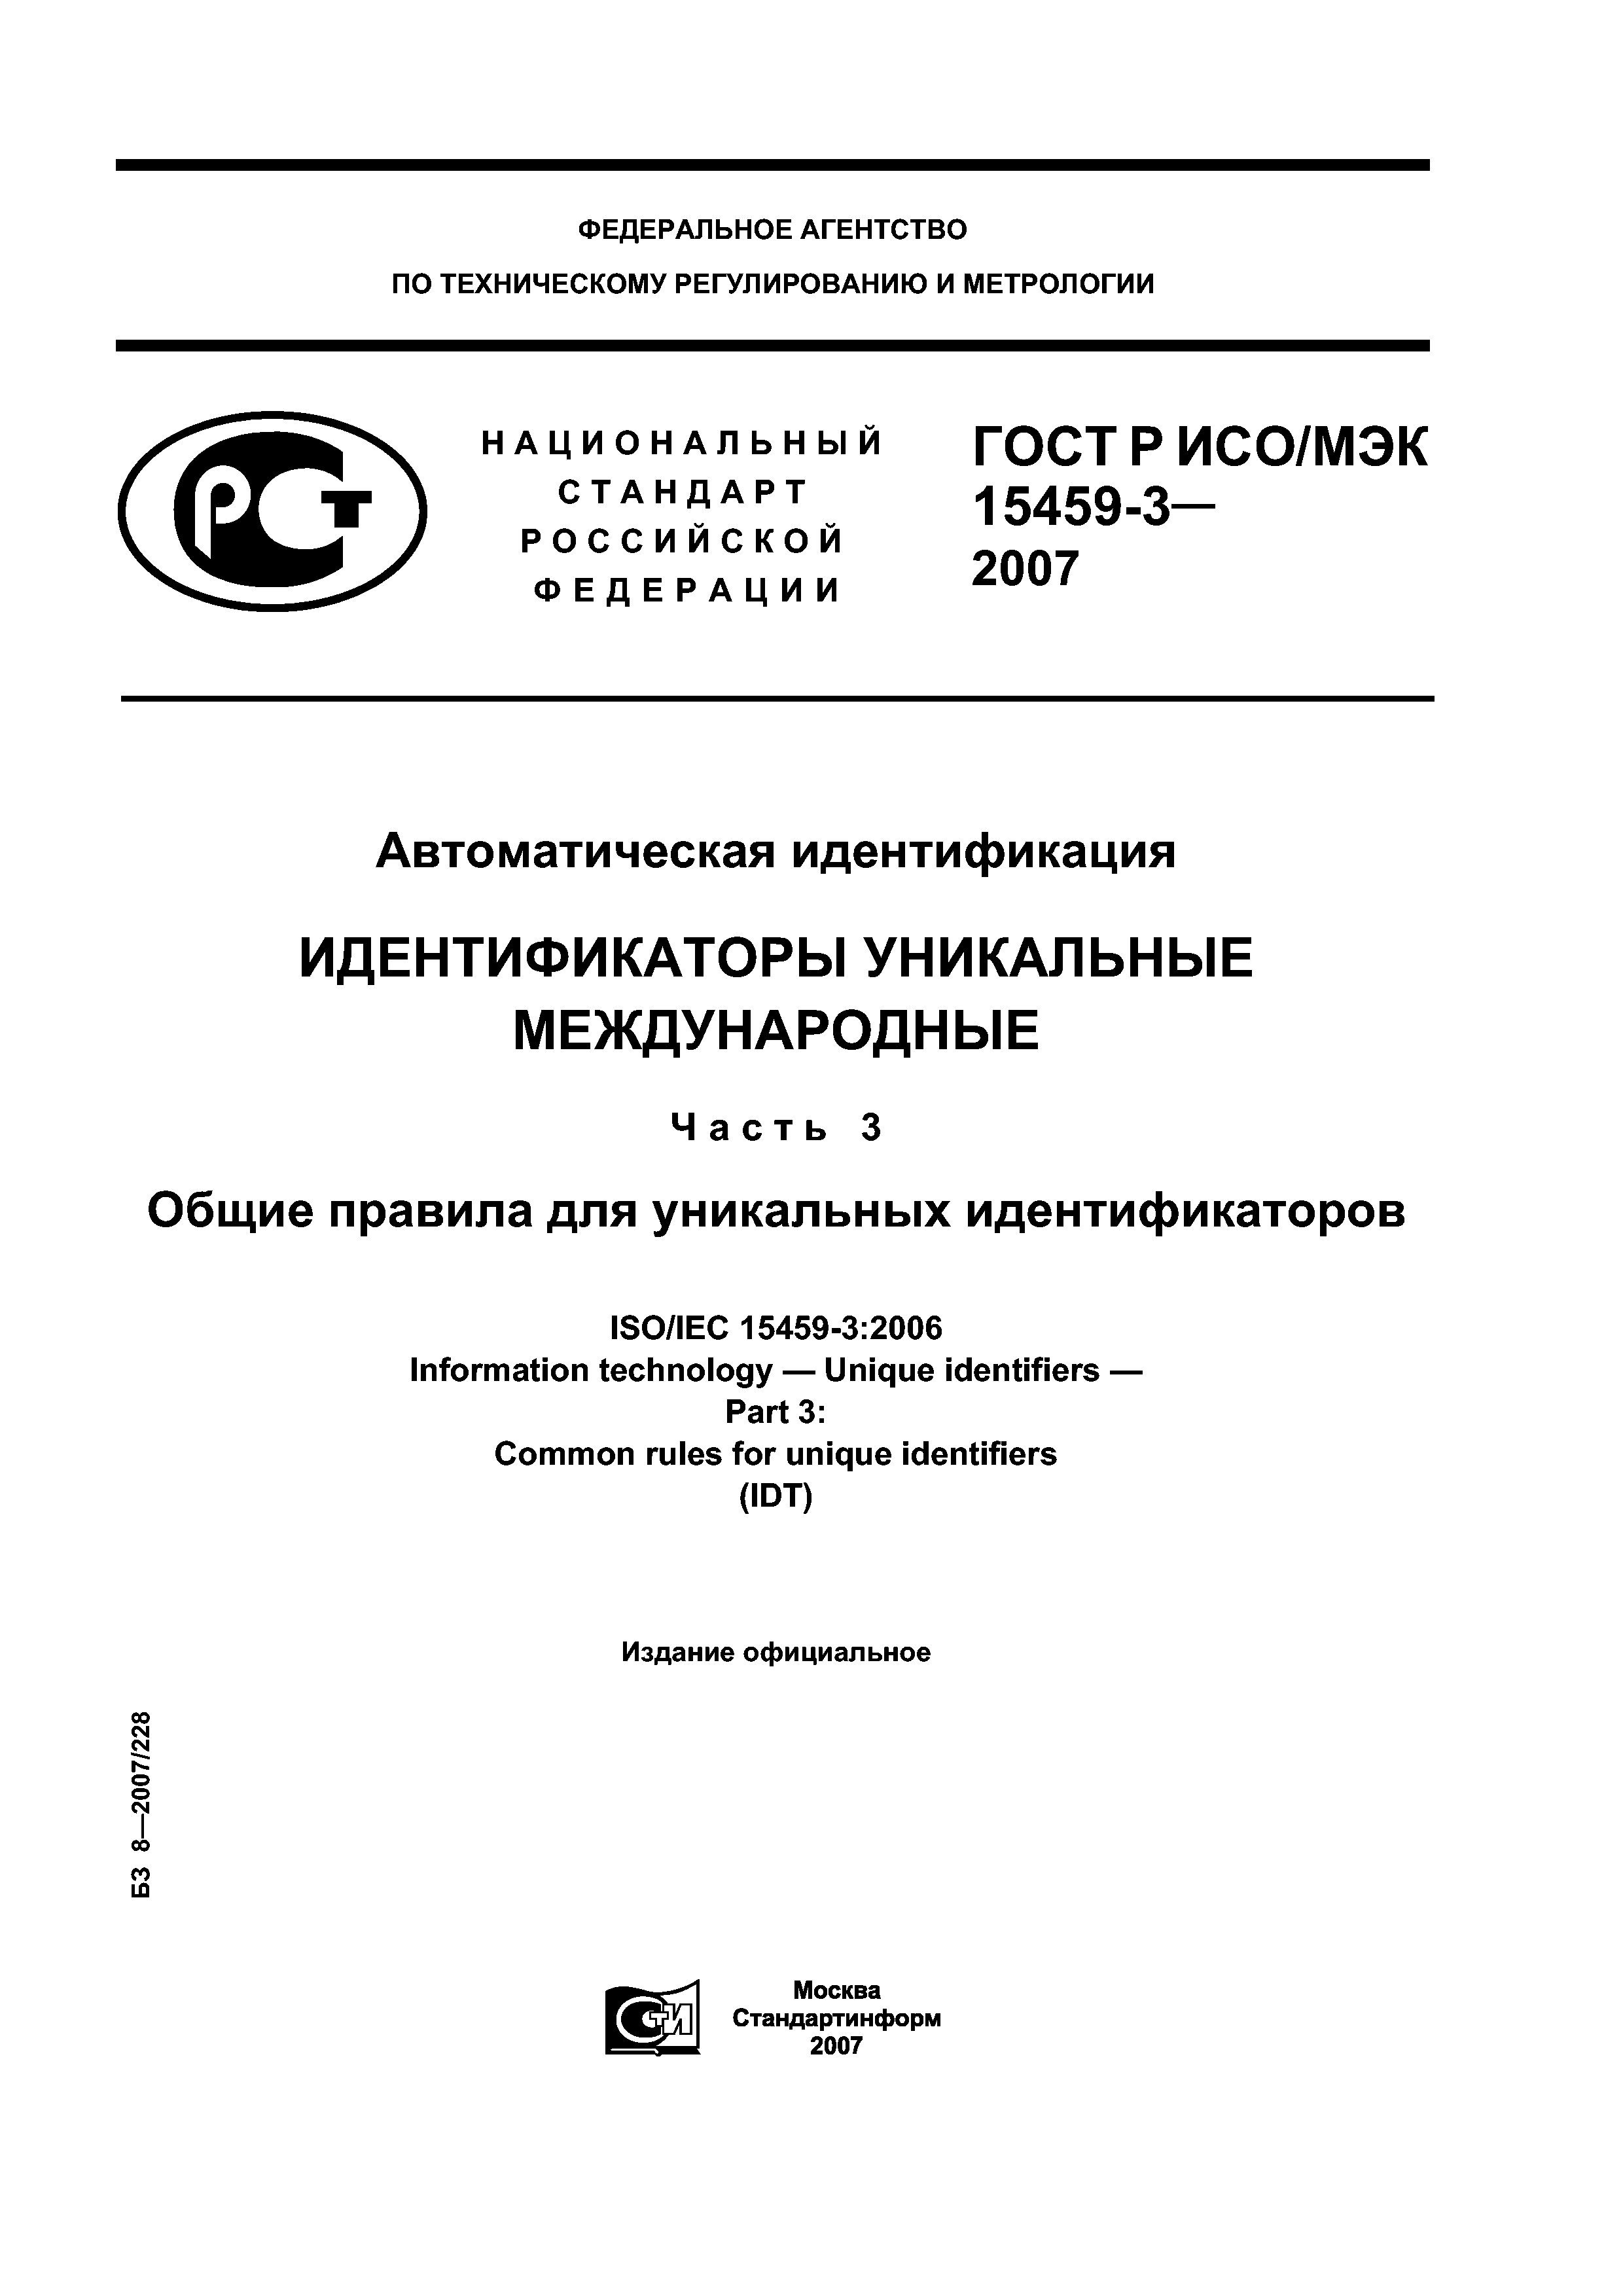 ГОСТ Р ИСО/МЭК 15459-3-2007